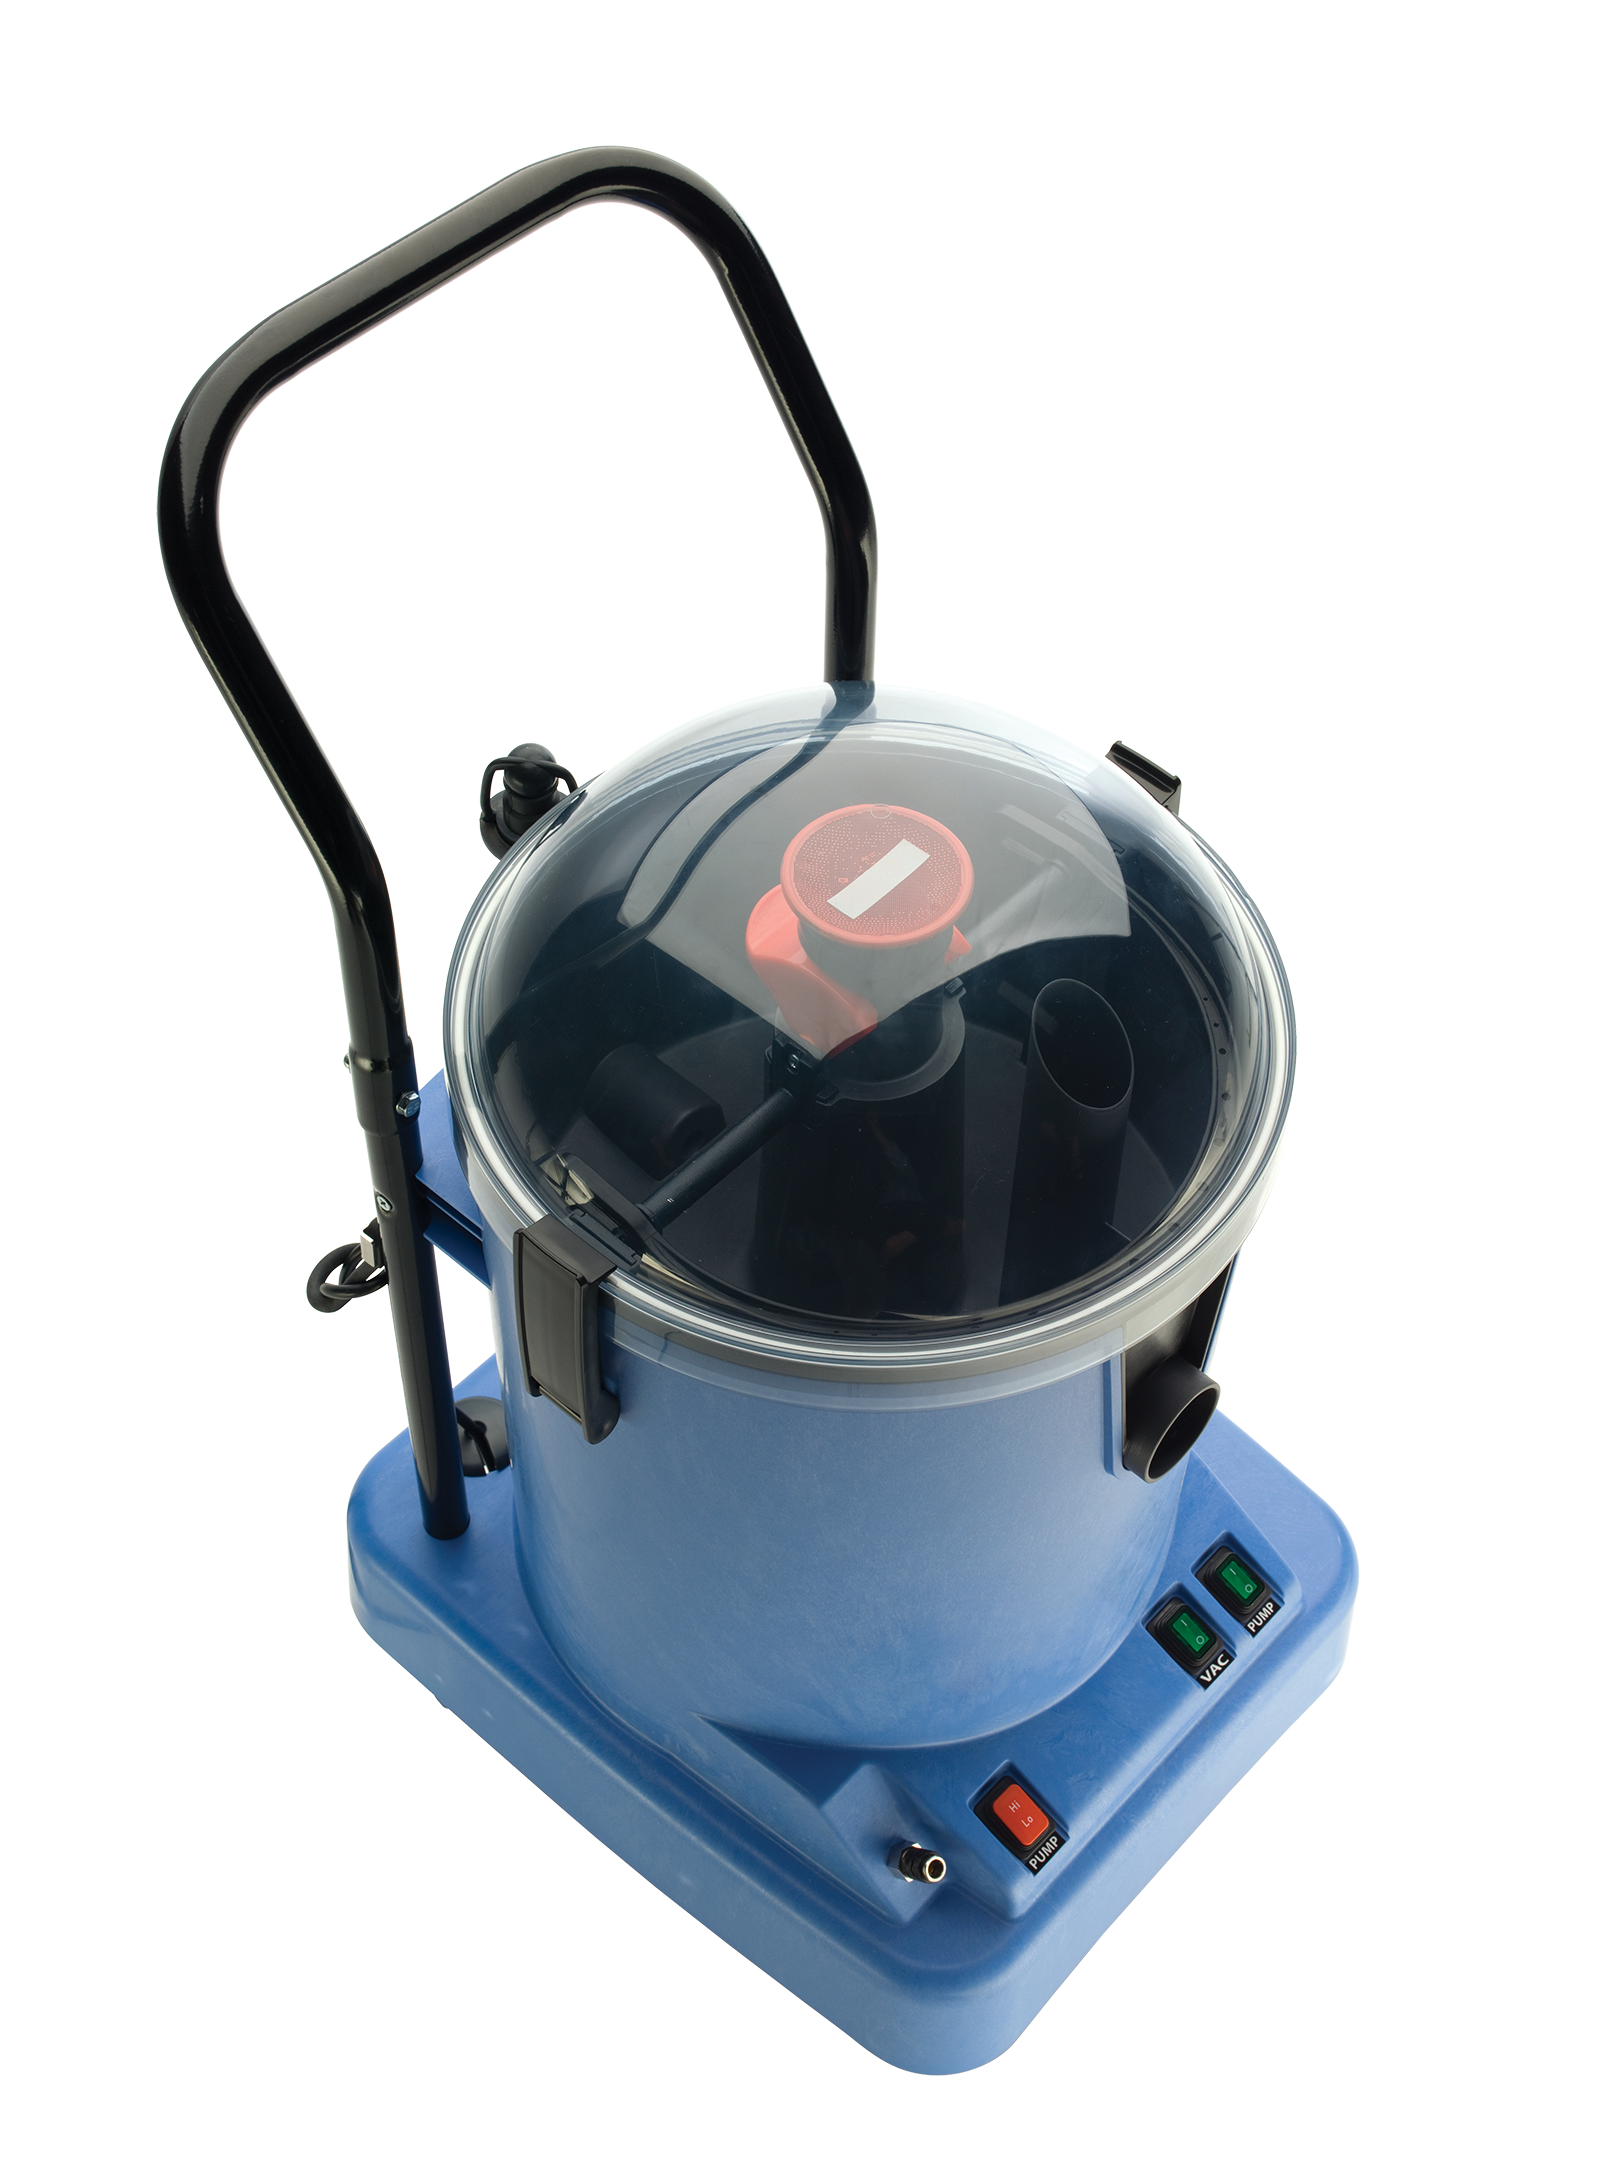 Numatic HNL15 CleanTec Hi-Lo Extraction Vacuum Cleaner